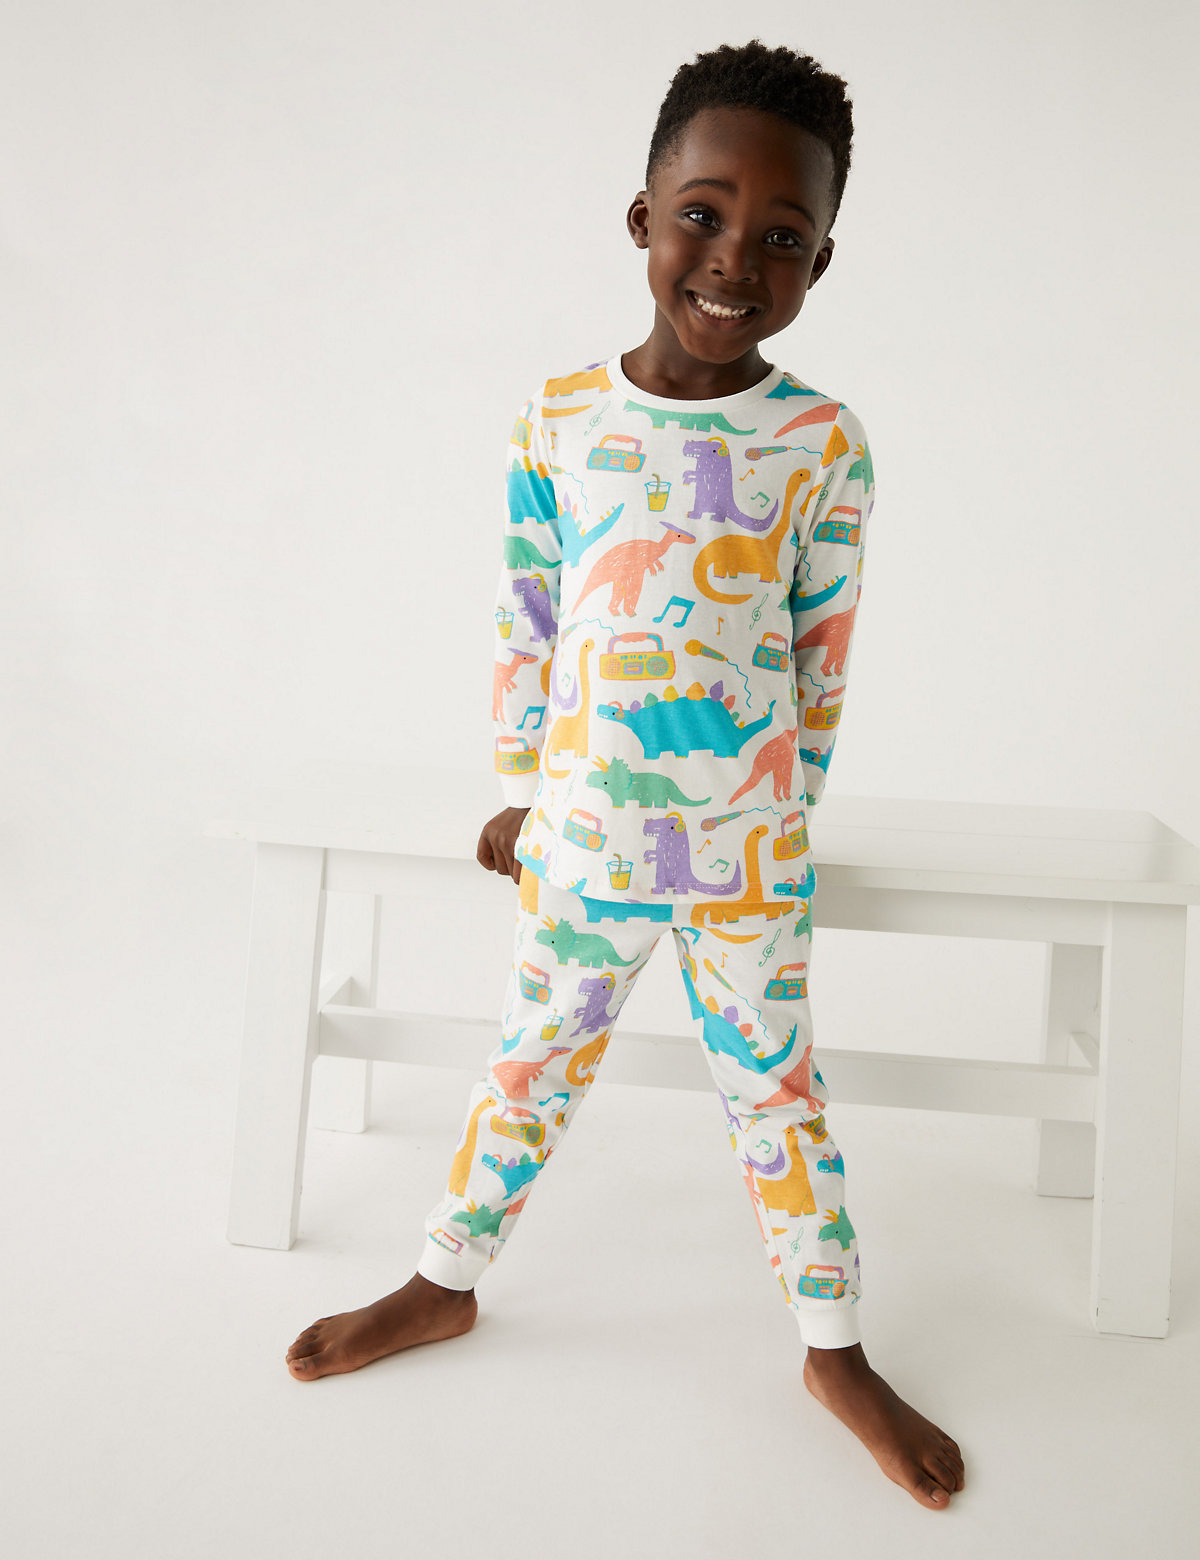 2pk Pure Cotton Dinosaur Pyjama Sets